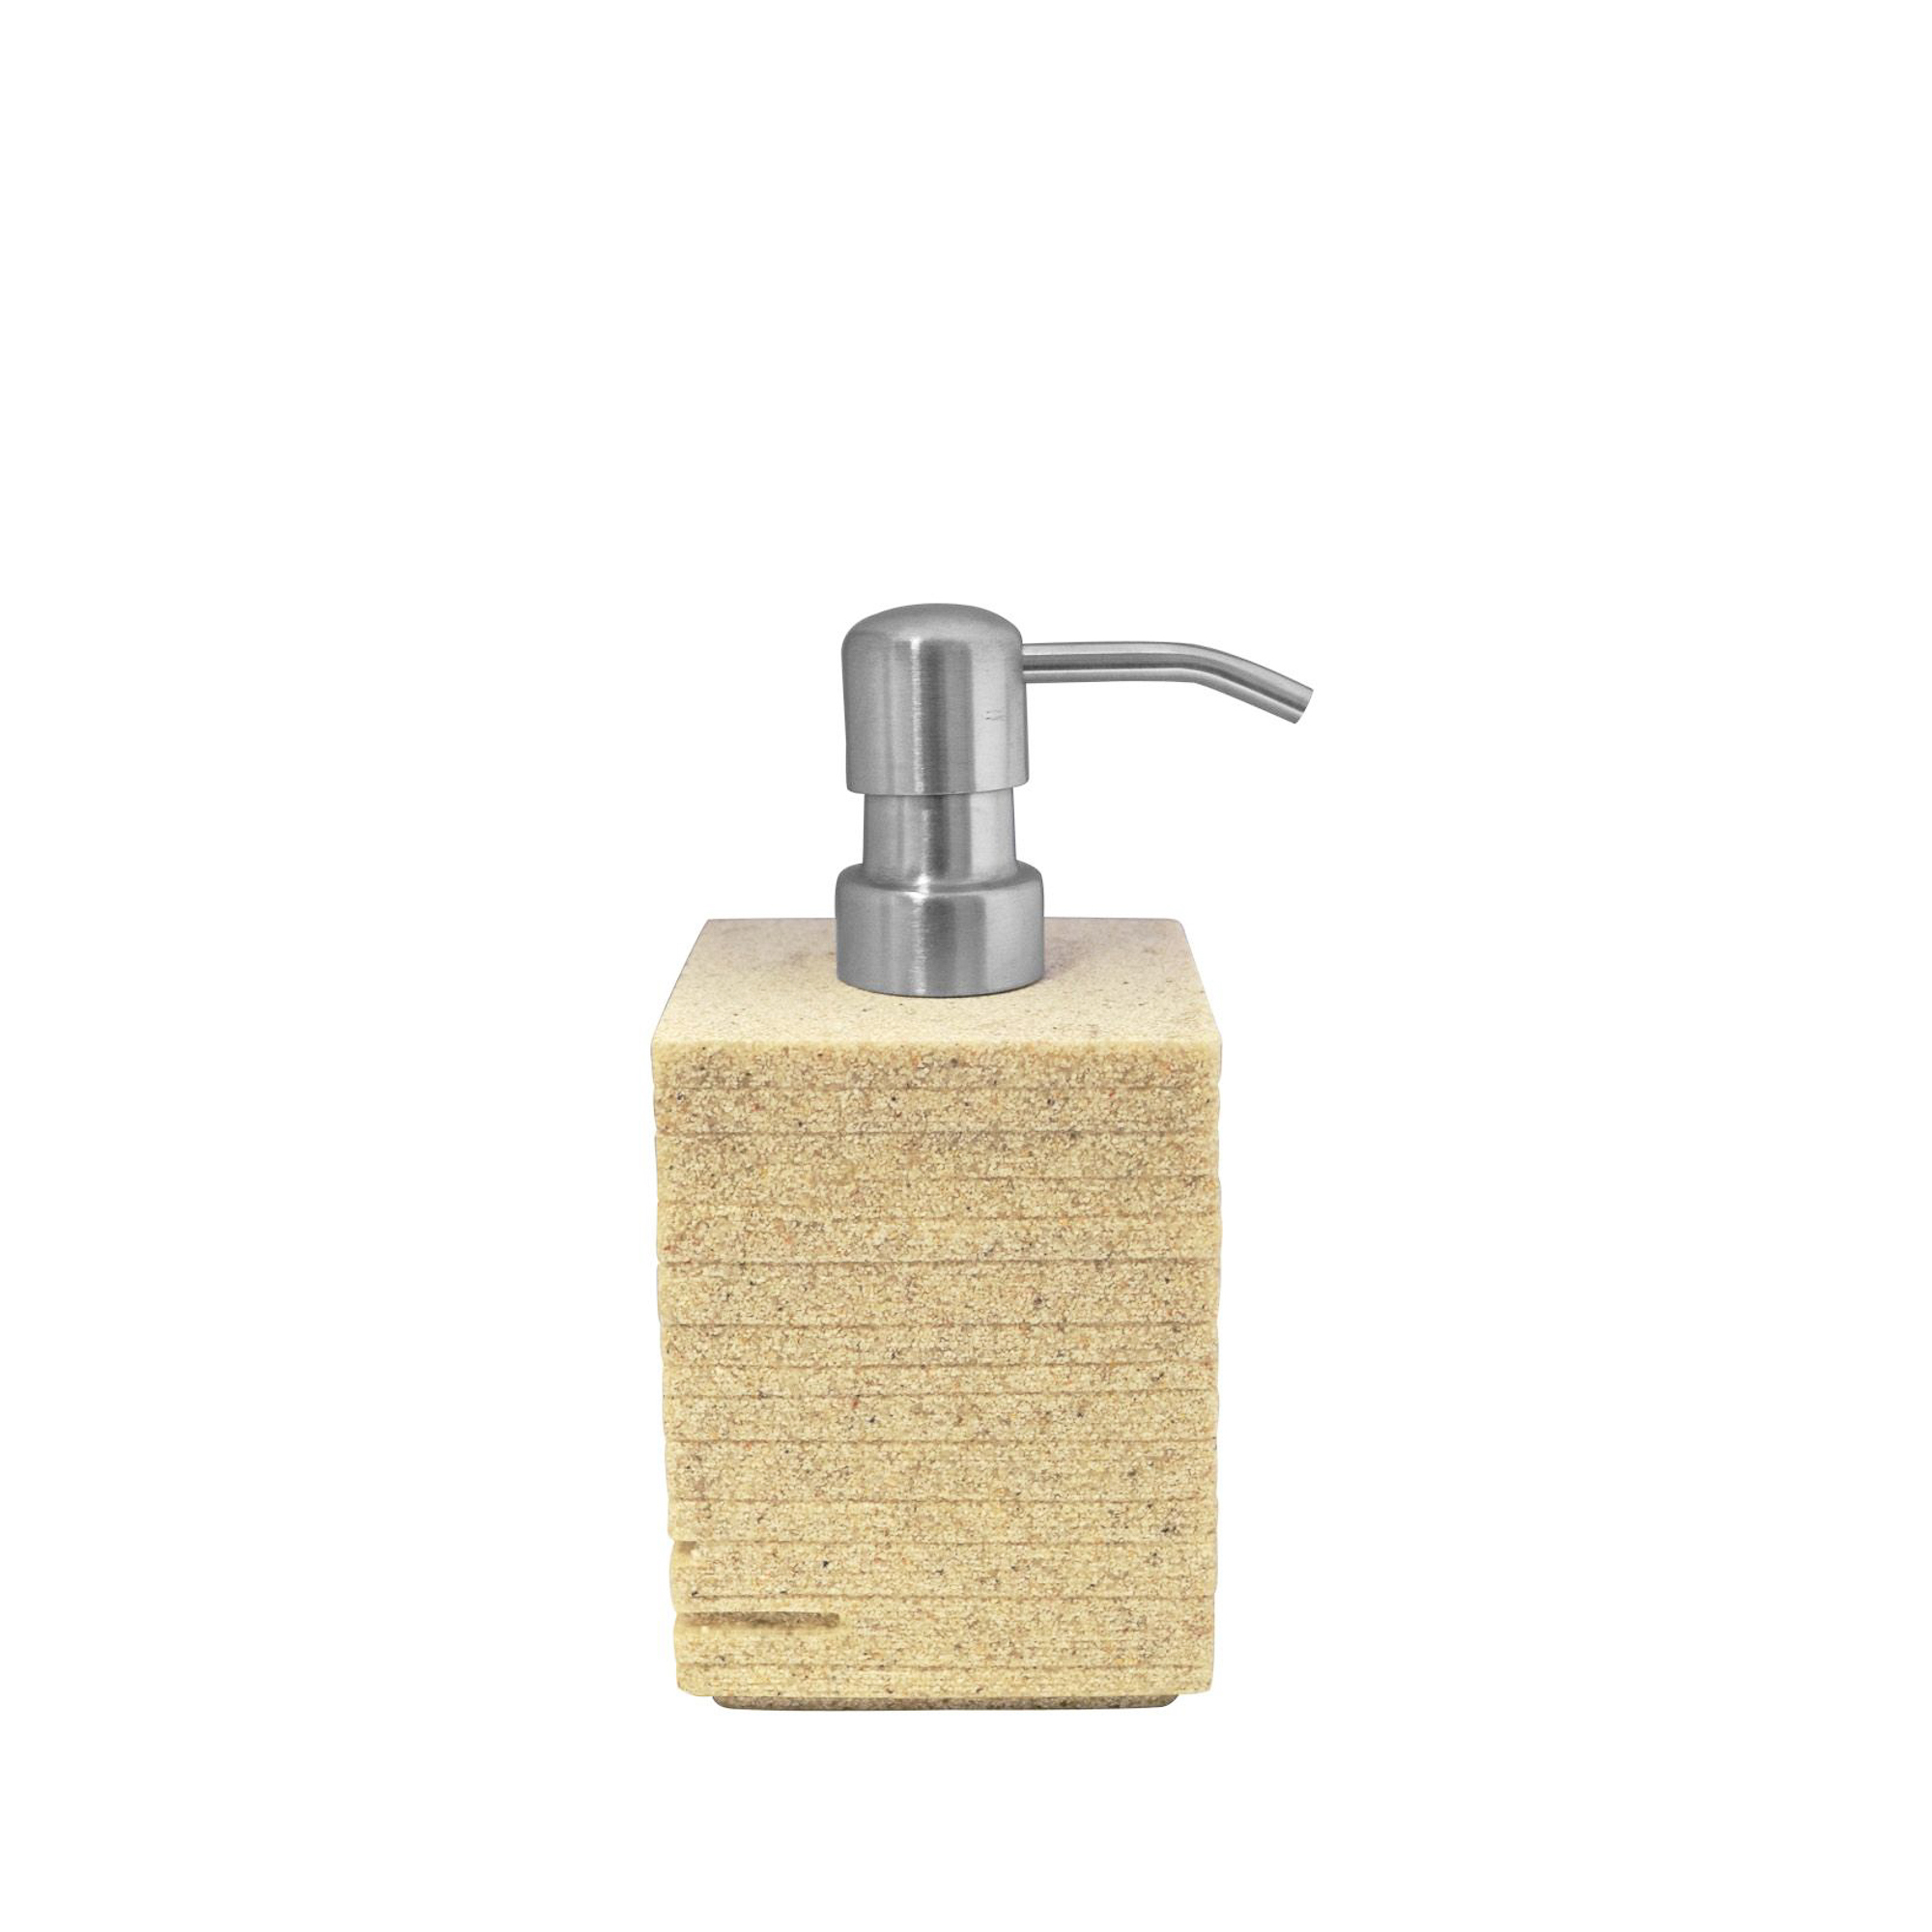 Дозатор для жидкого мыла Brick бежевый Ridder дозатор для жидкого мыла ridder brick 22150527 серебро